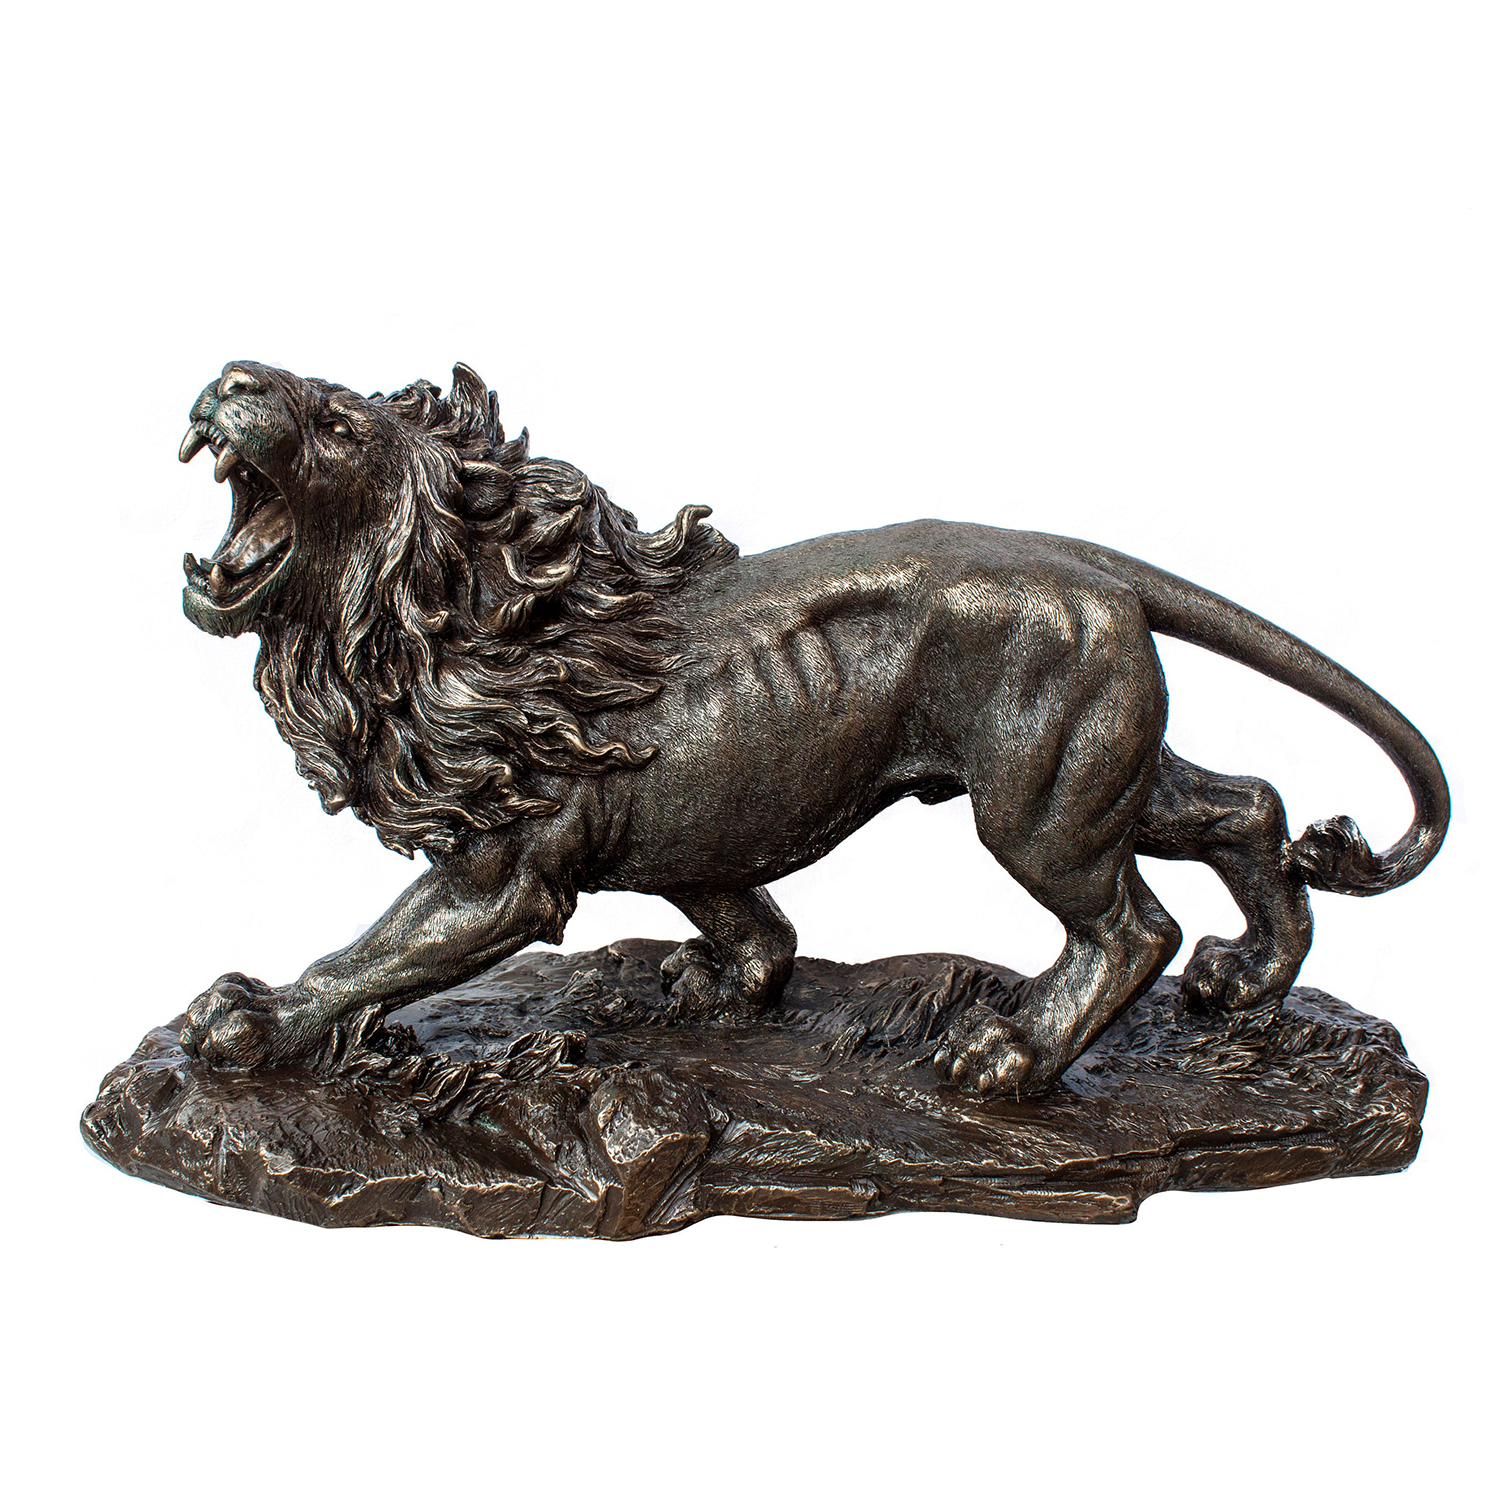 Lion Brass Statue